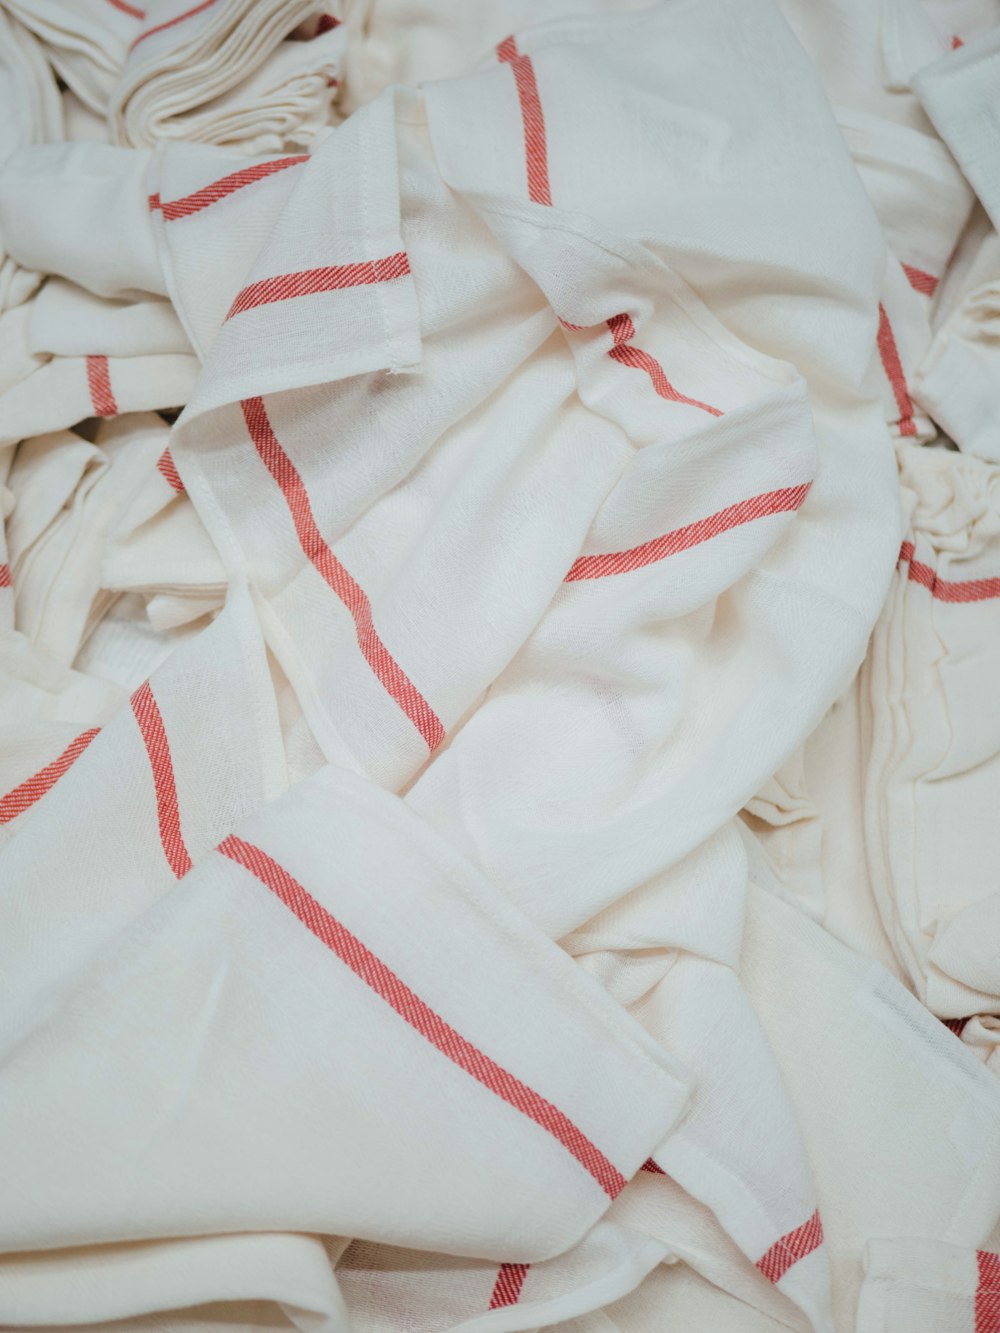 Textiles blancs et rouges